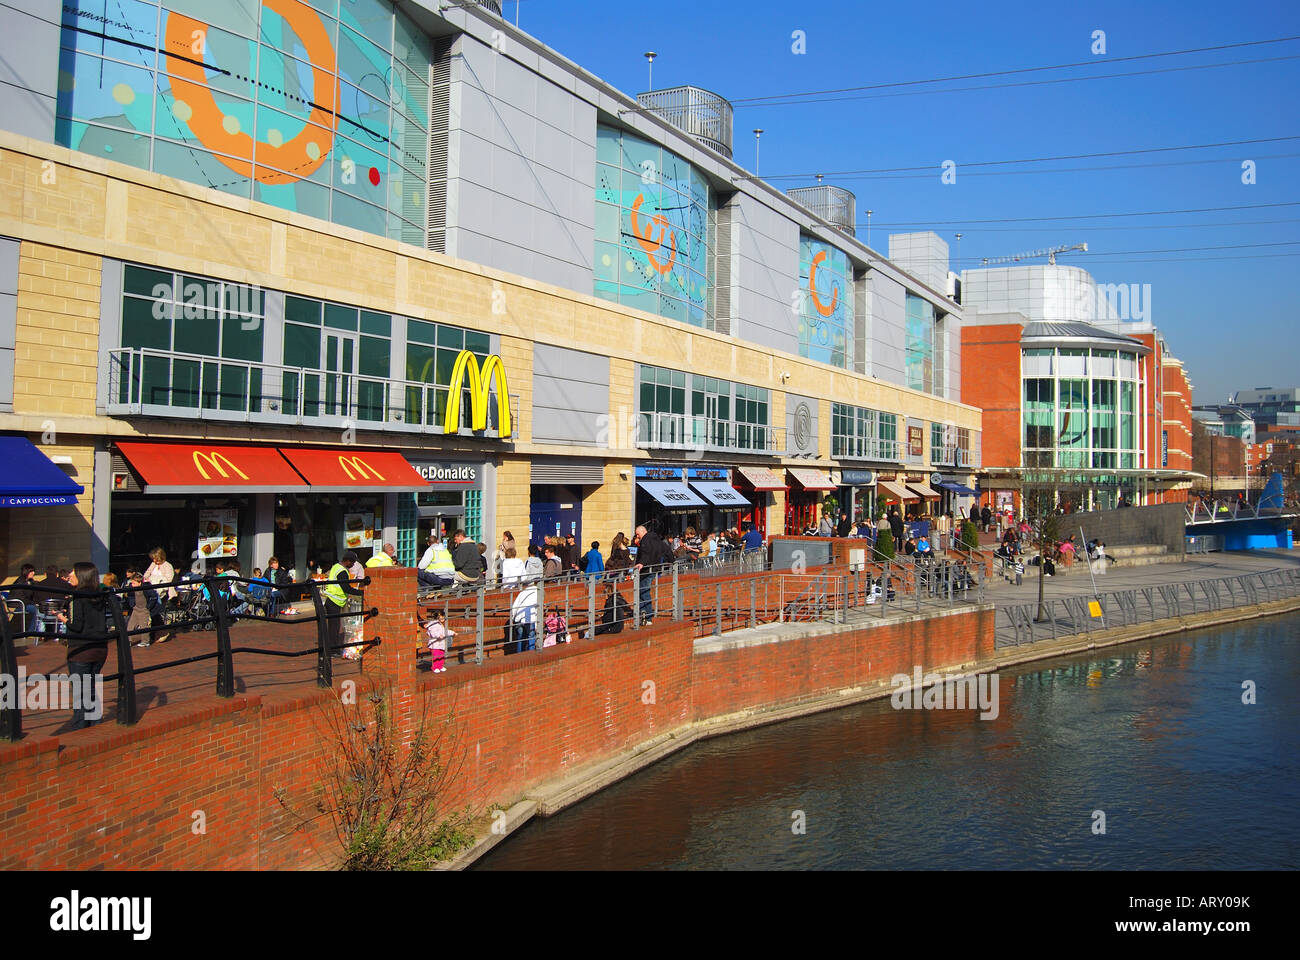 Kanal vor Geschäften und Cafés, die Oracle Shopping Centre, Reading, Berkshire, England, Vereinigtes Königreich Stockfoto